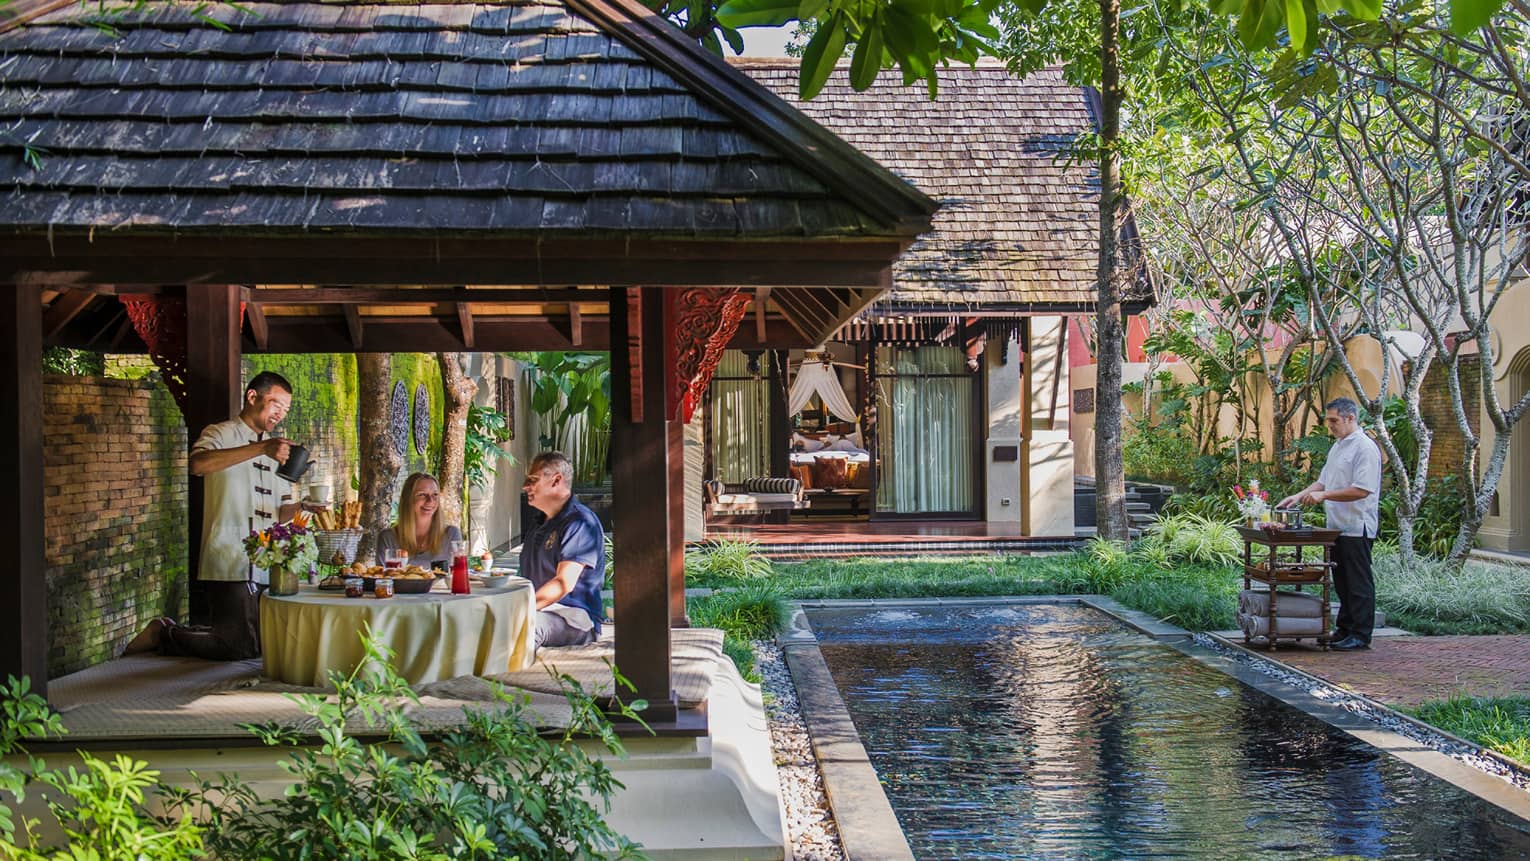 Hotel staff serve couple under dining gazebo by pond 